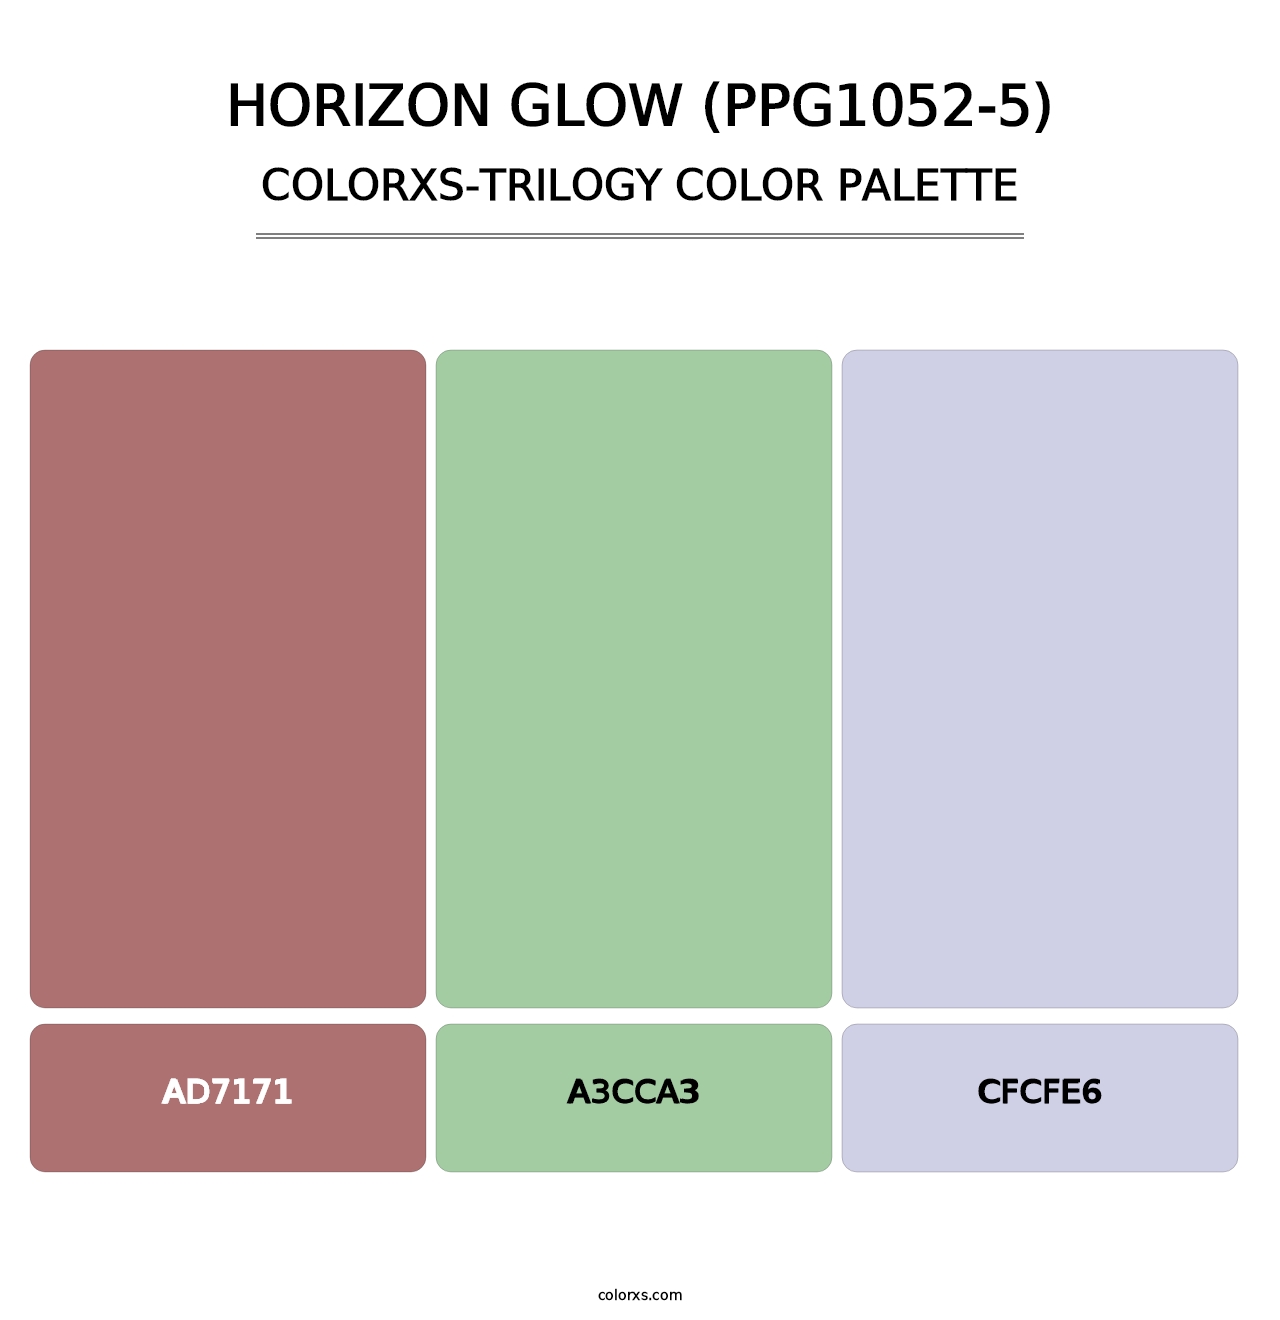 Horizon Glow (PPG1052-5) - Colorxs Trilogy Palette